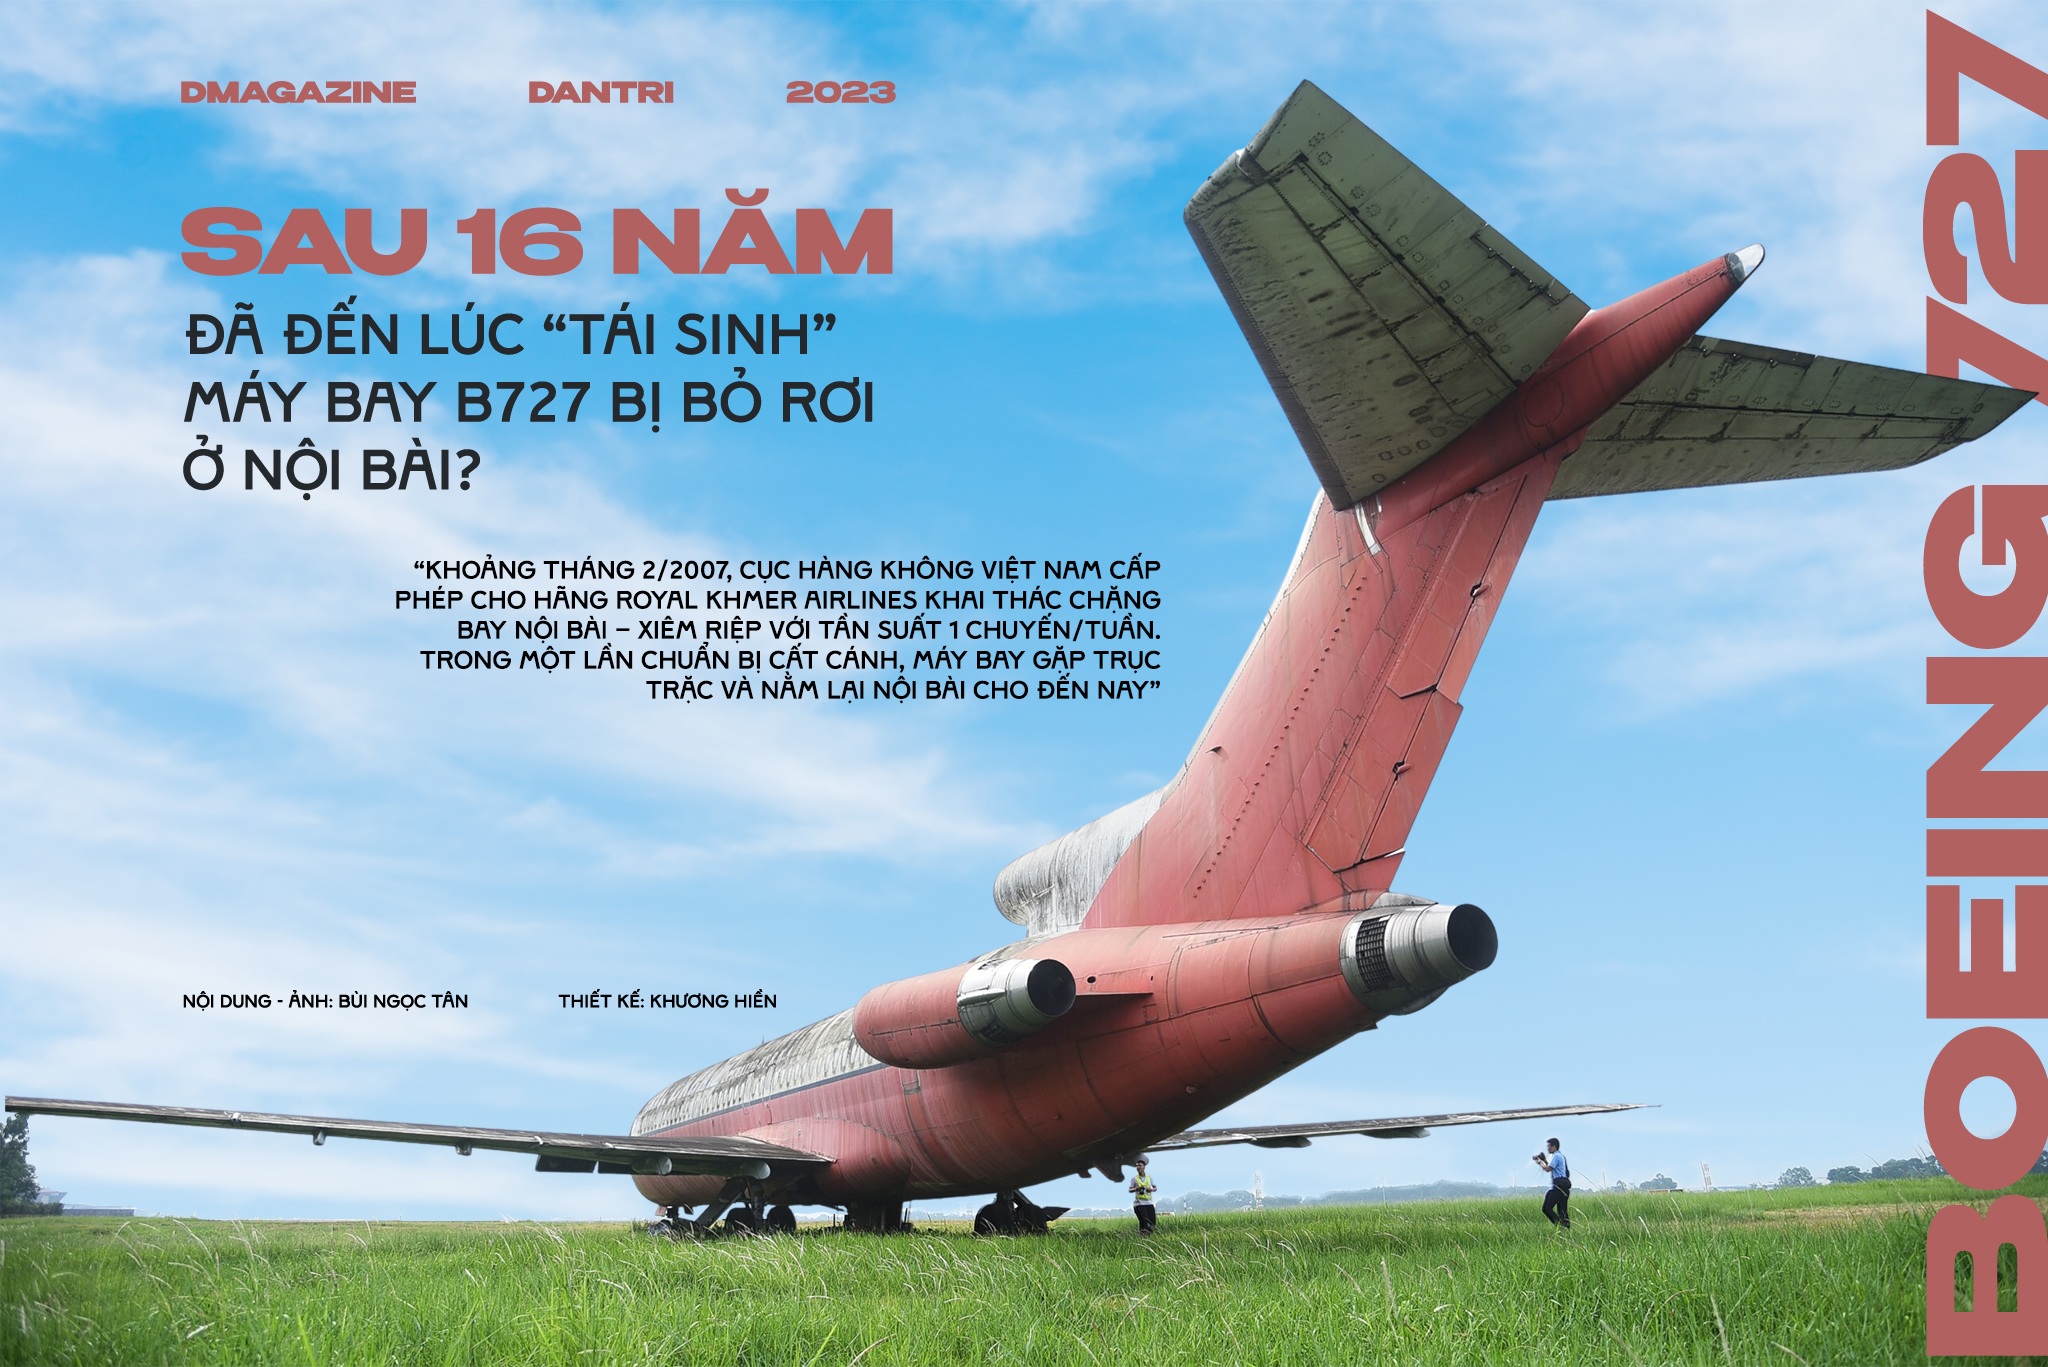 Sau 16 năm, đã đến lúc "tái sinh" máy bay B727 bị bỏ rơi ở Nội Bài?